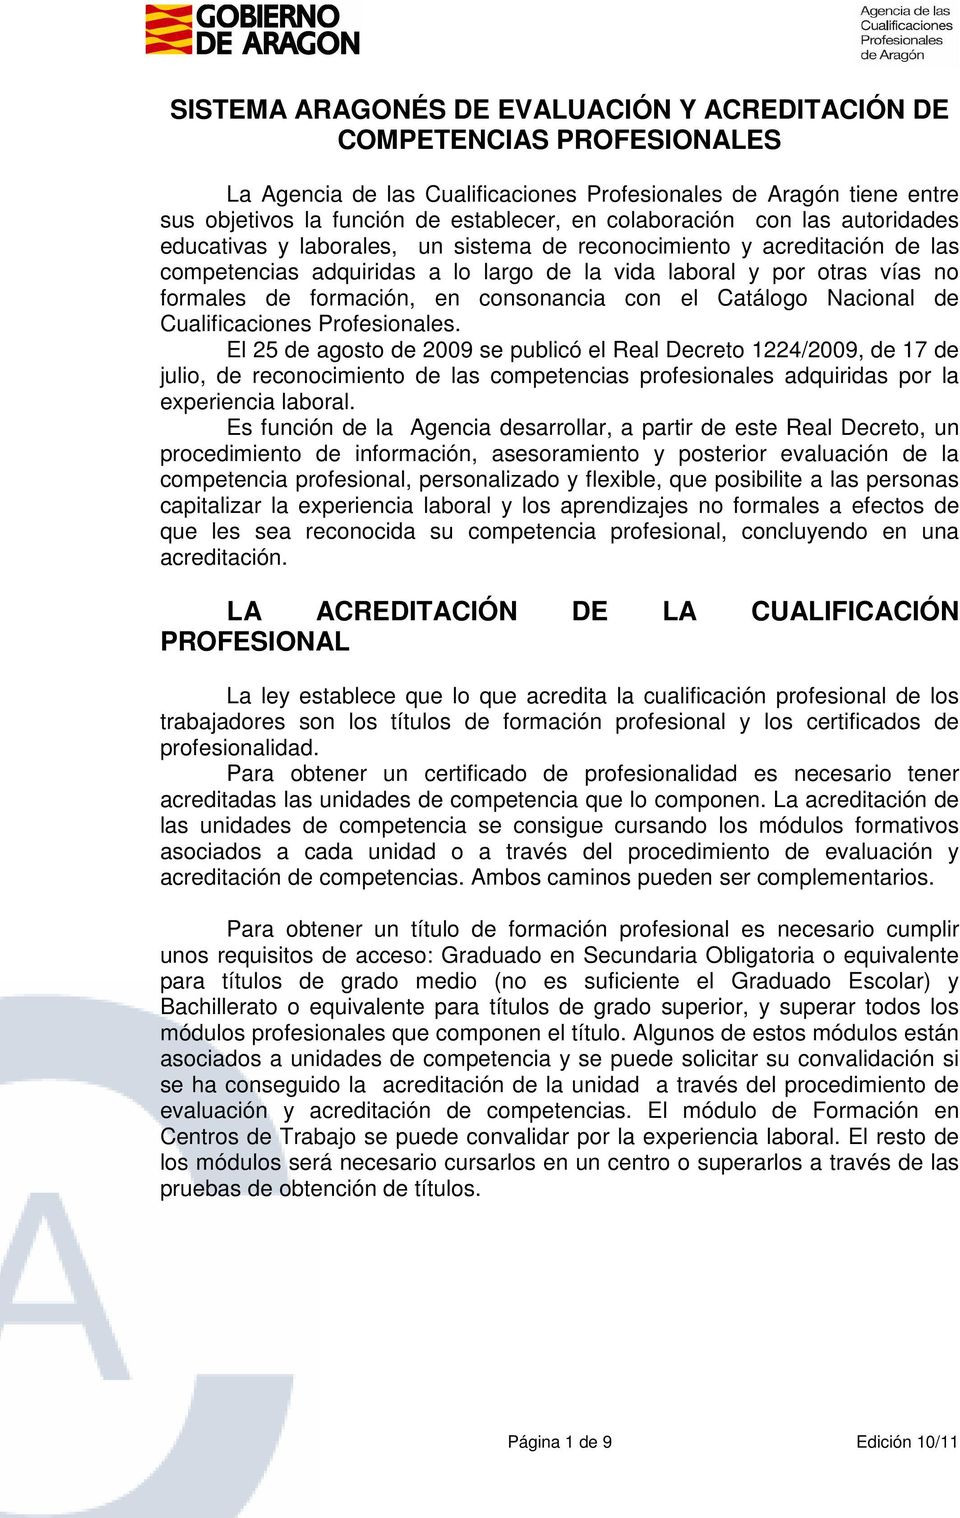 formación, en consonancia con el Catálogo Nacional de Cualificaciones Profesionales.